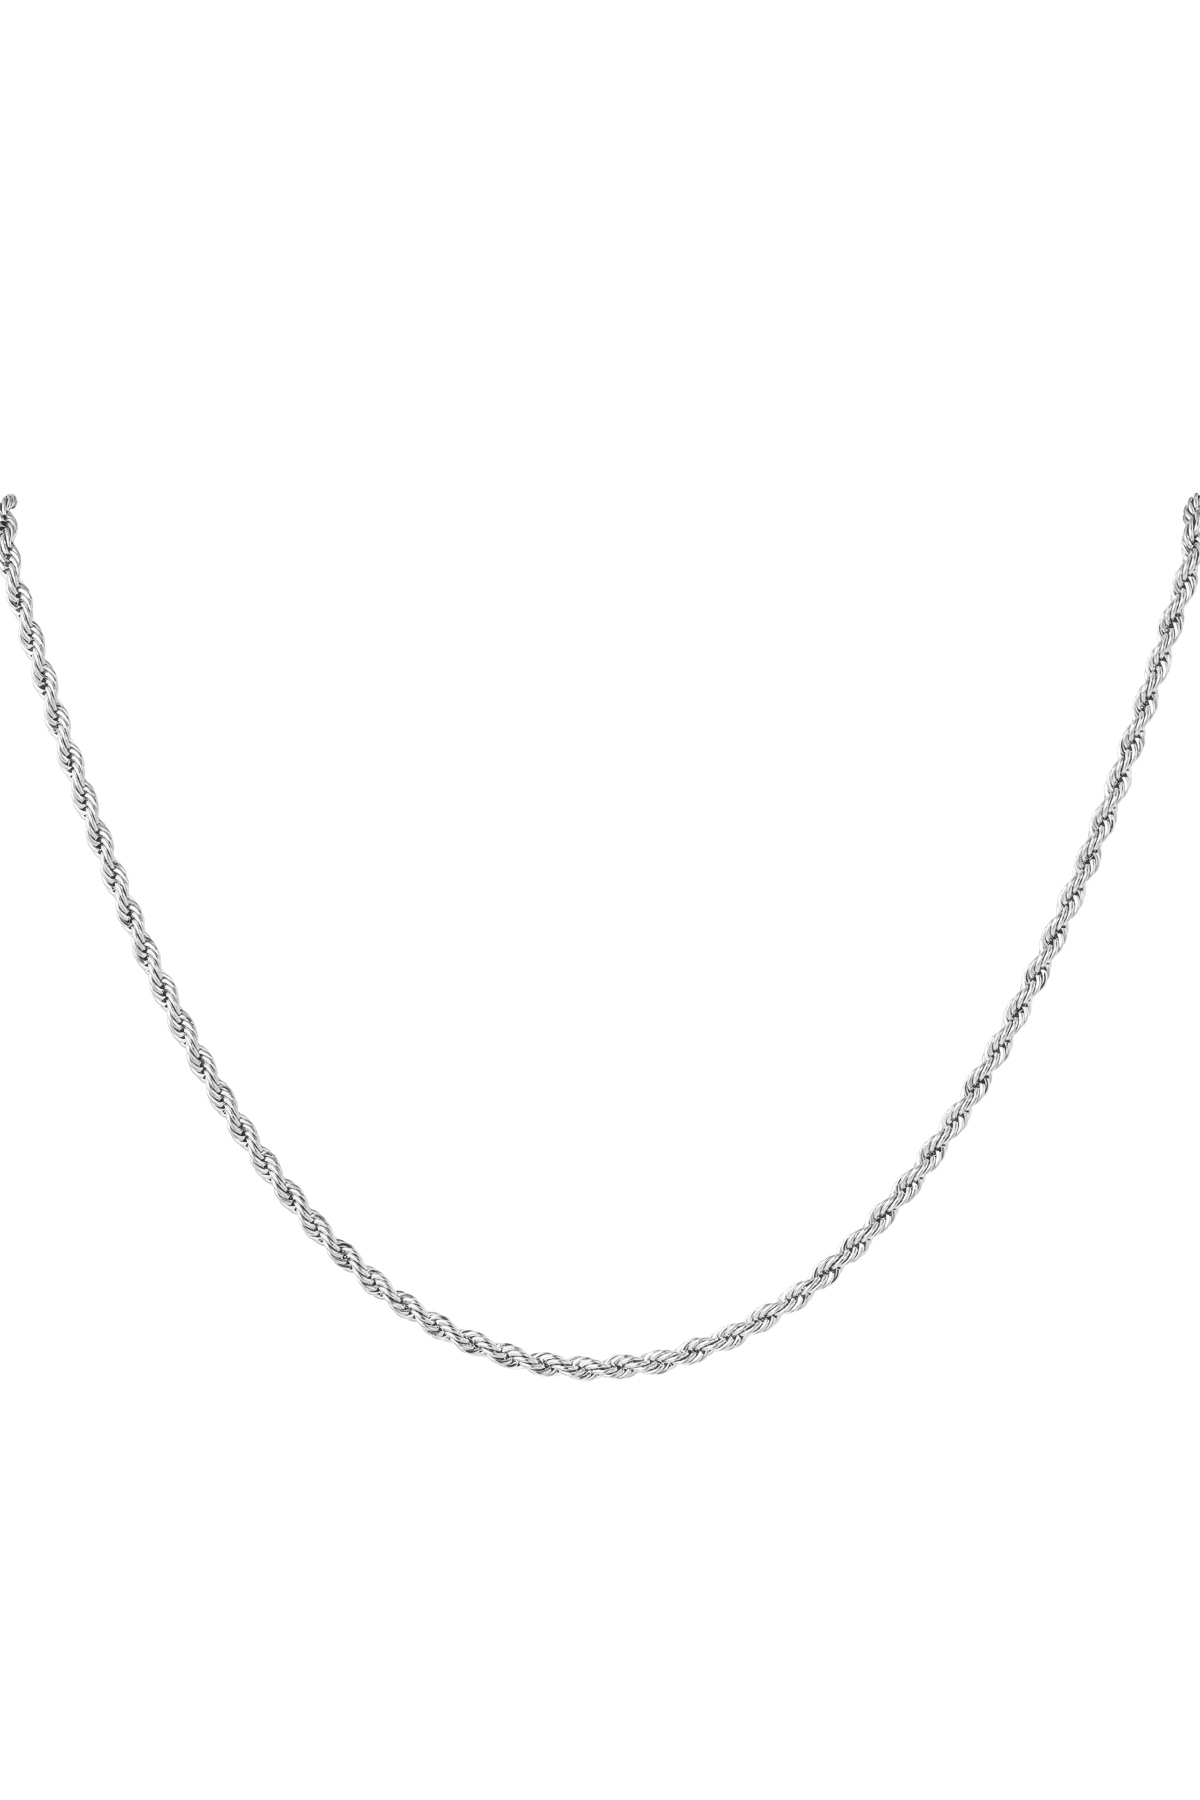 Unisex-Halskette aus Edelstahl, gedreht, 60 cm – Silber